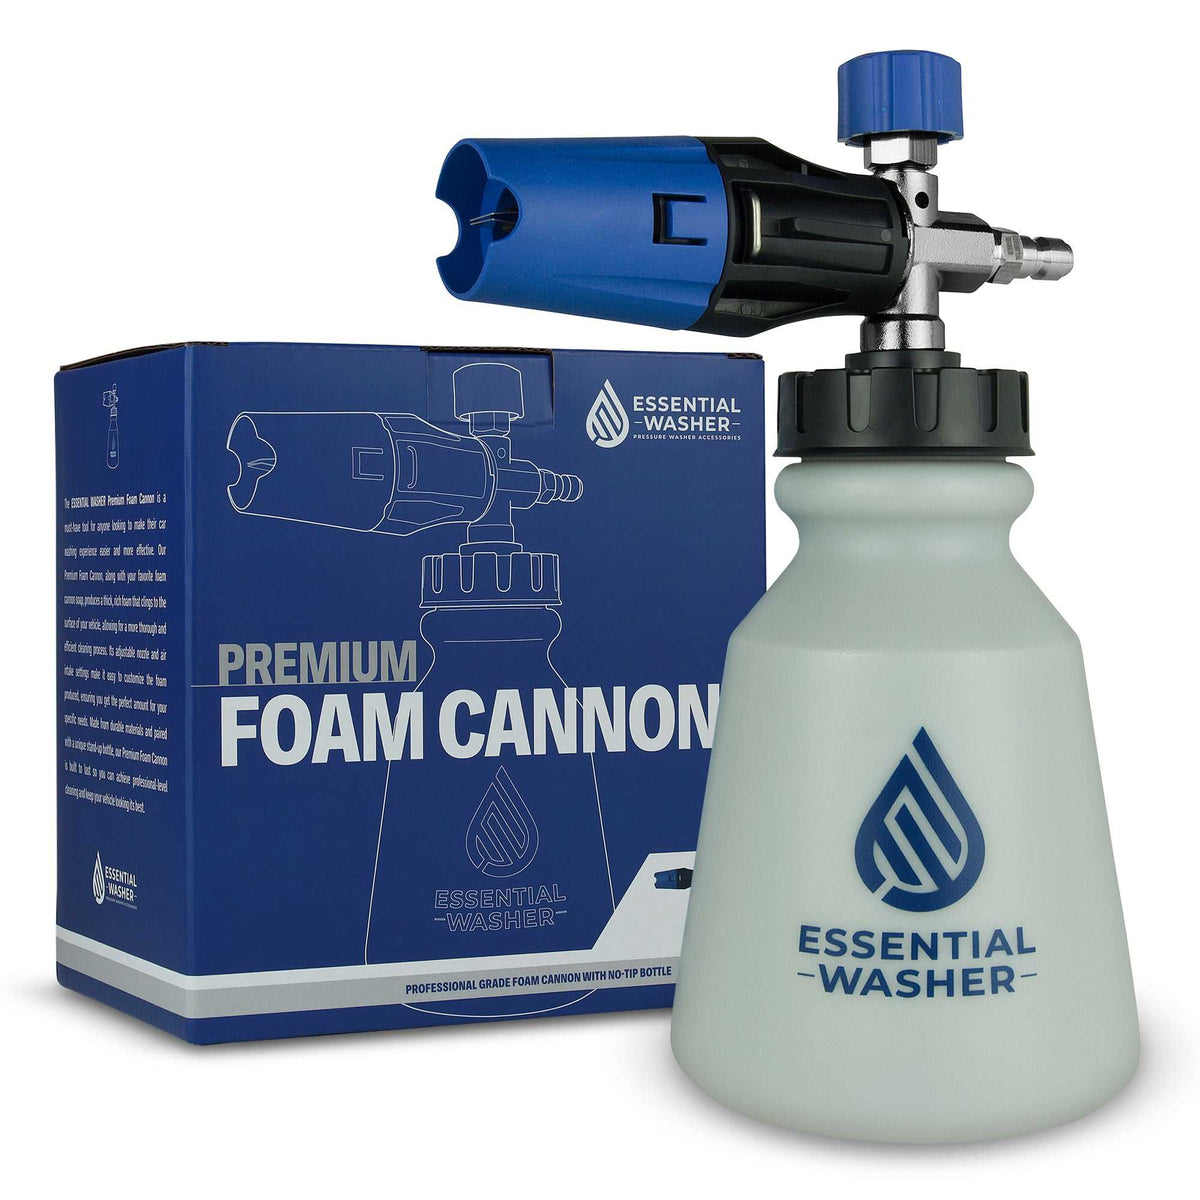 High Pressure Foam Cannon